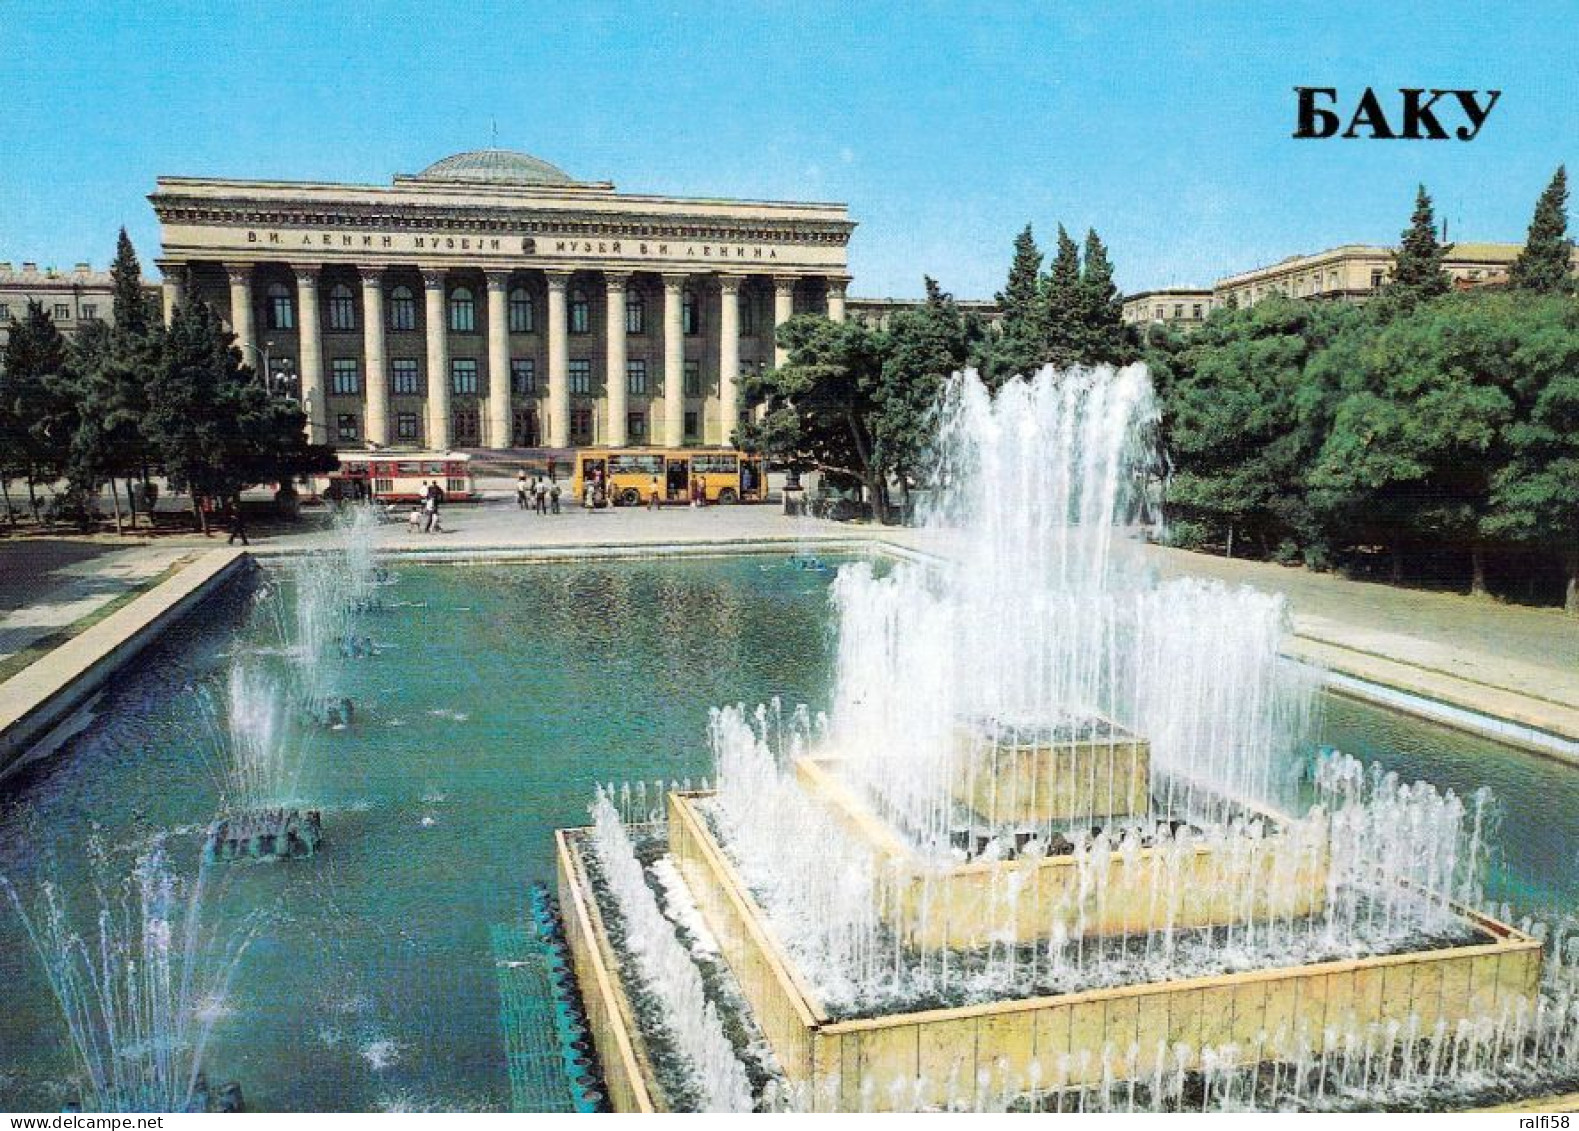 1 AK Aserbaidschan * Das Lenin Museum In Der Hauptstadt Baku - Karte Aus Der Zeit Der Sowjetunion * - Azerbeidzjan